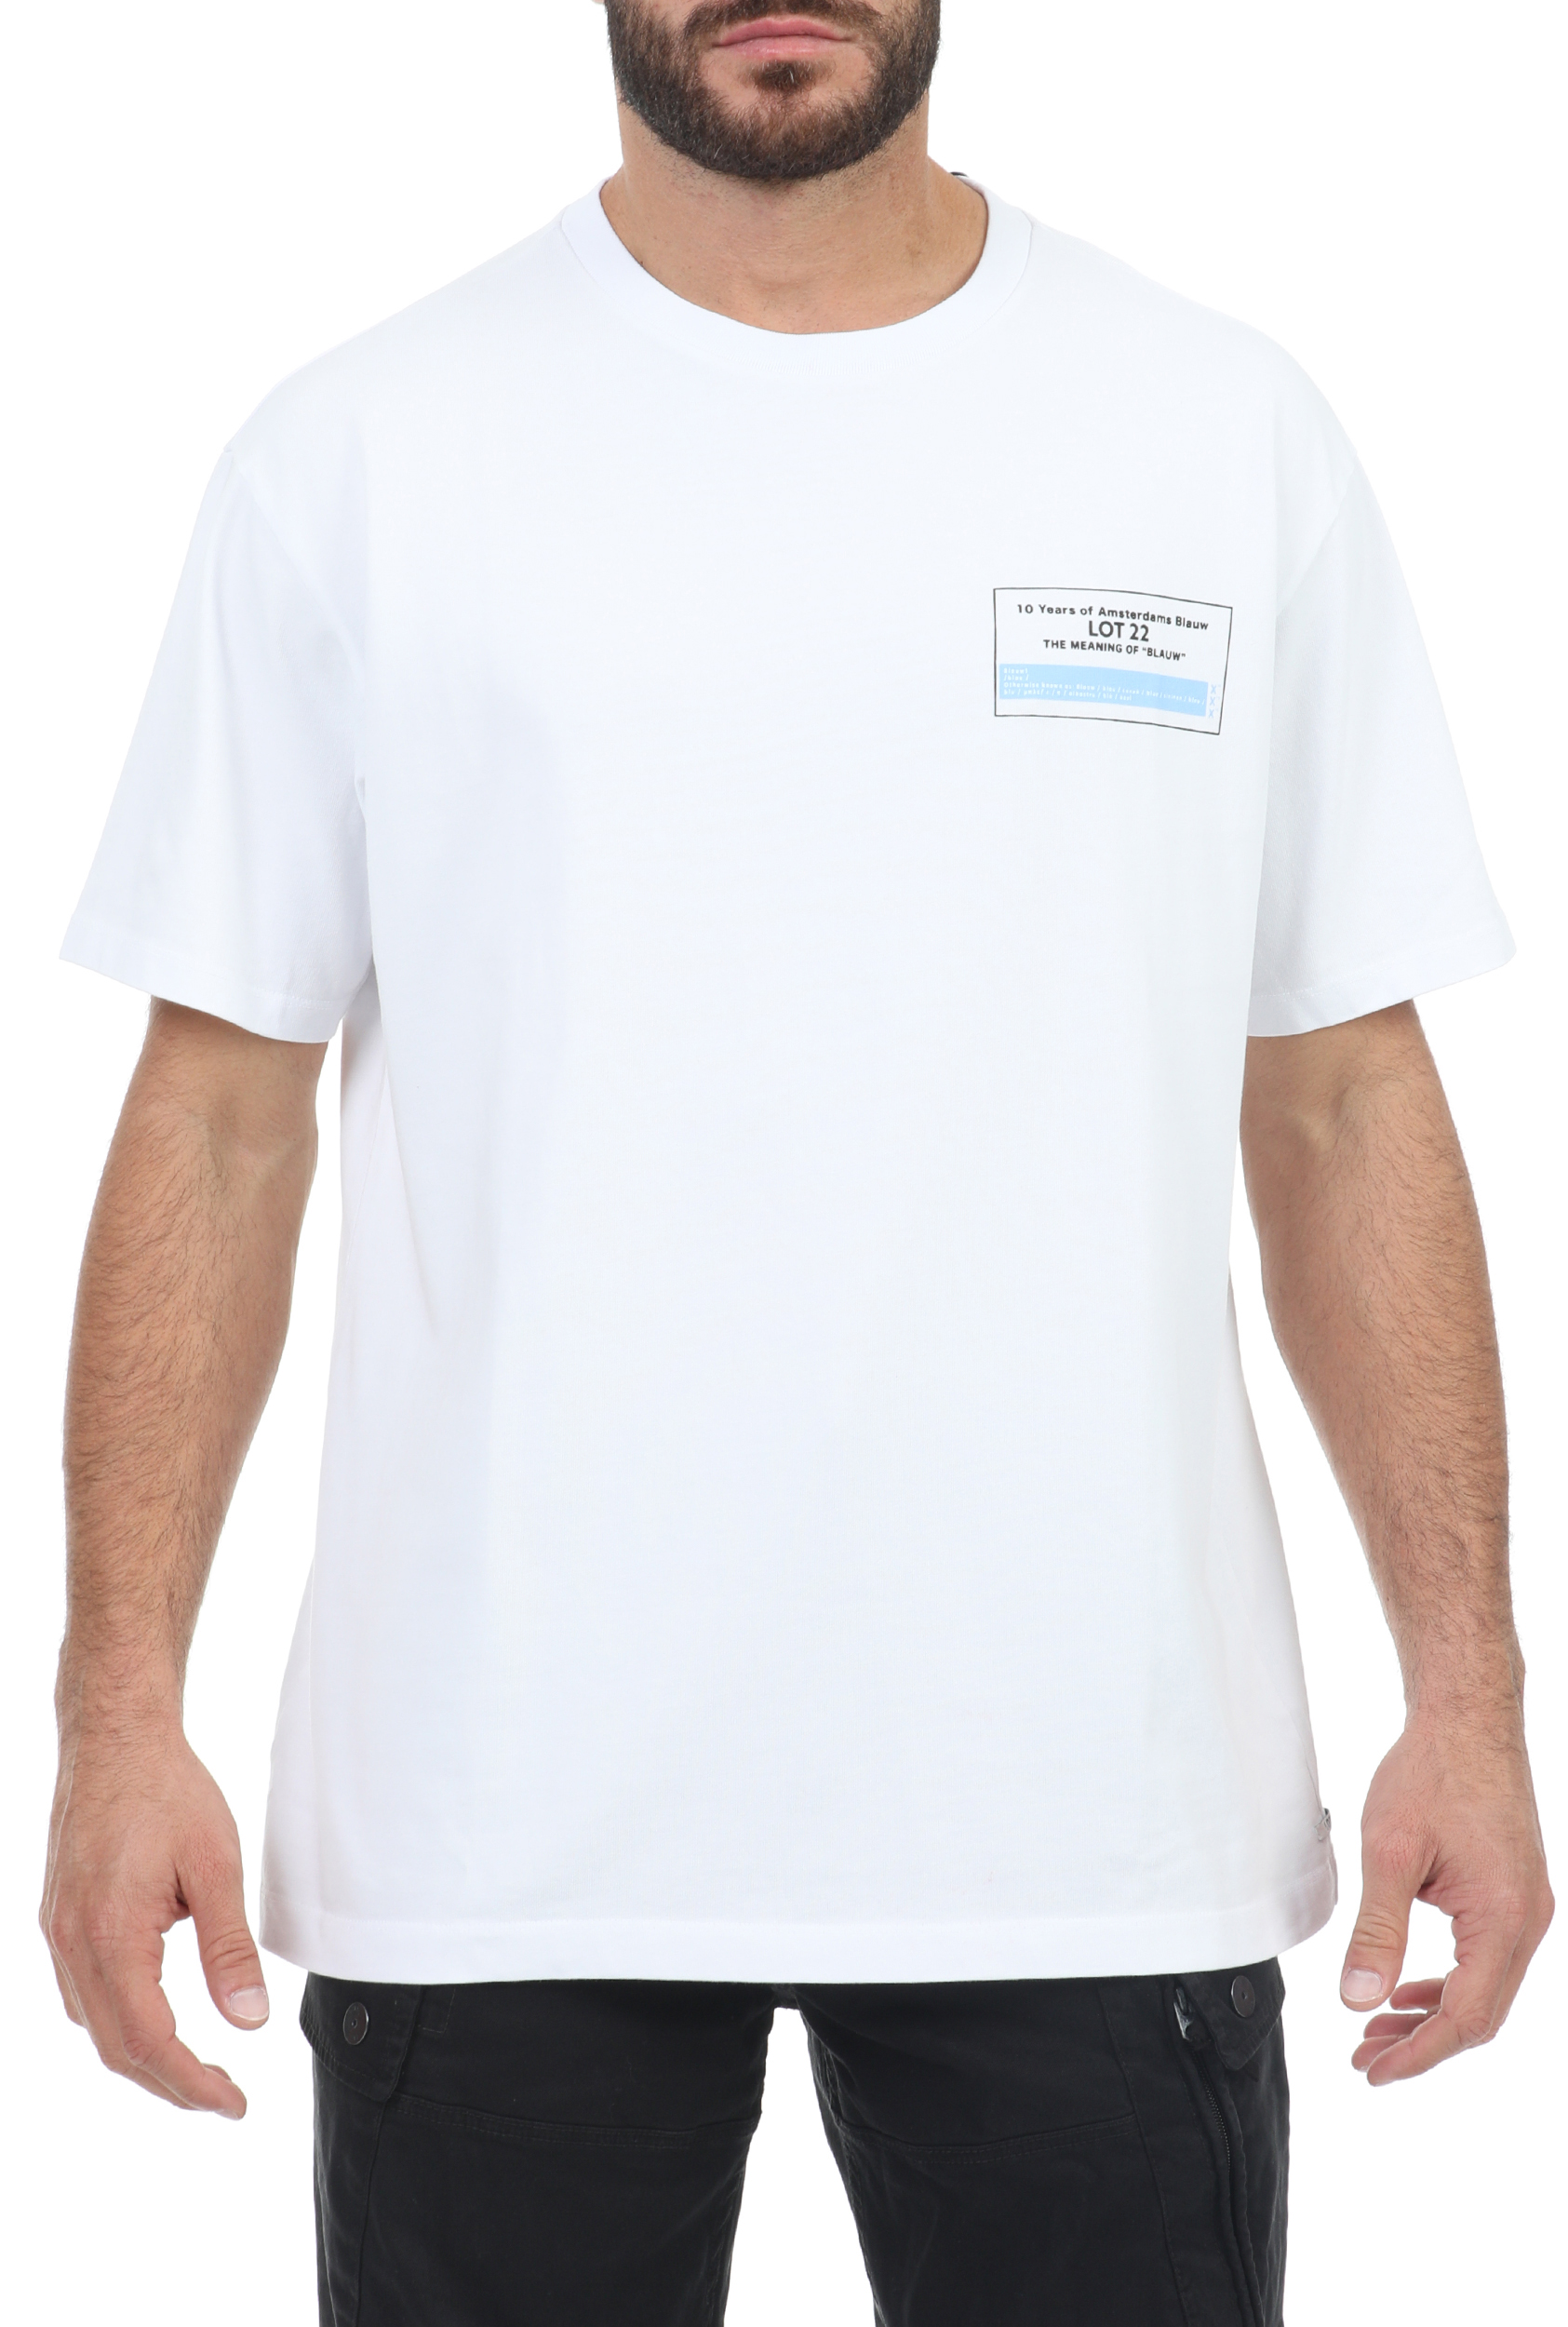 Ανδρικά/Ρούχα/Μπλούζες/Κοντομάνικες SCOTCH & SODA - Ανδρική κοντομάνικη μπλούζα SCOTCH & SODA Ams Blauw λευκό